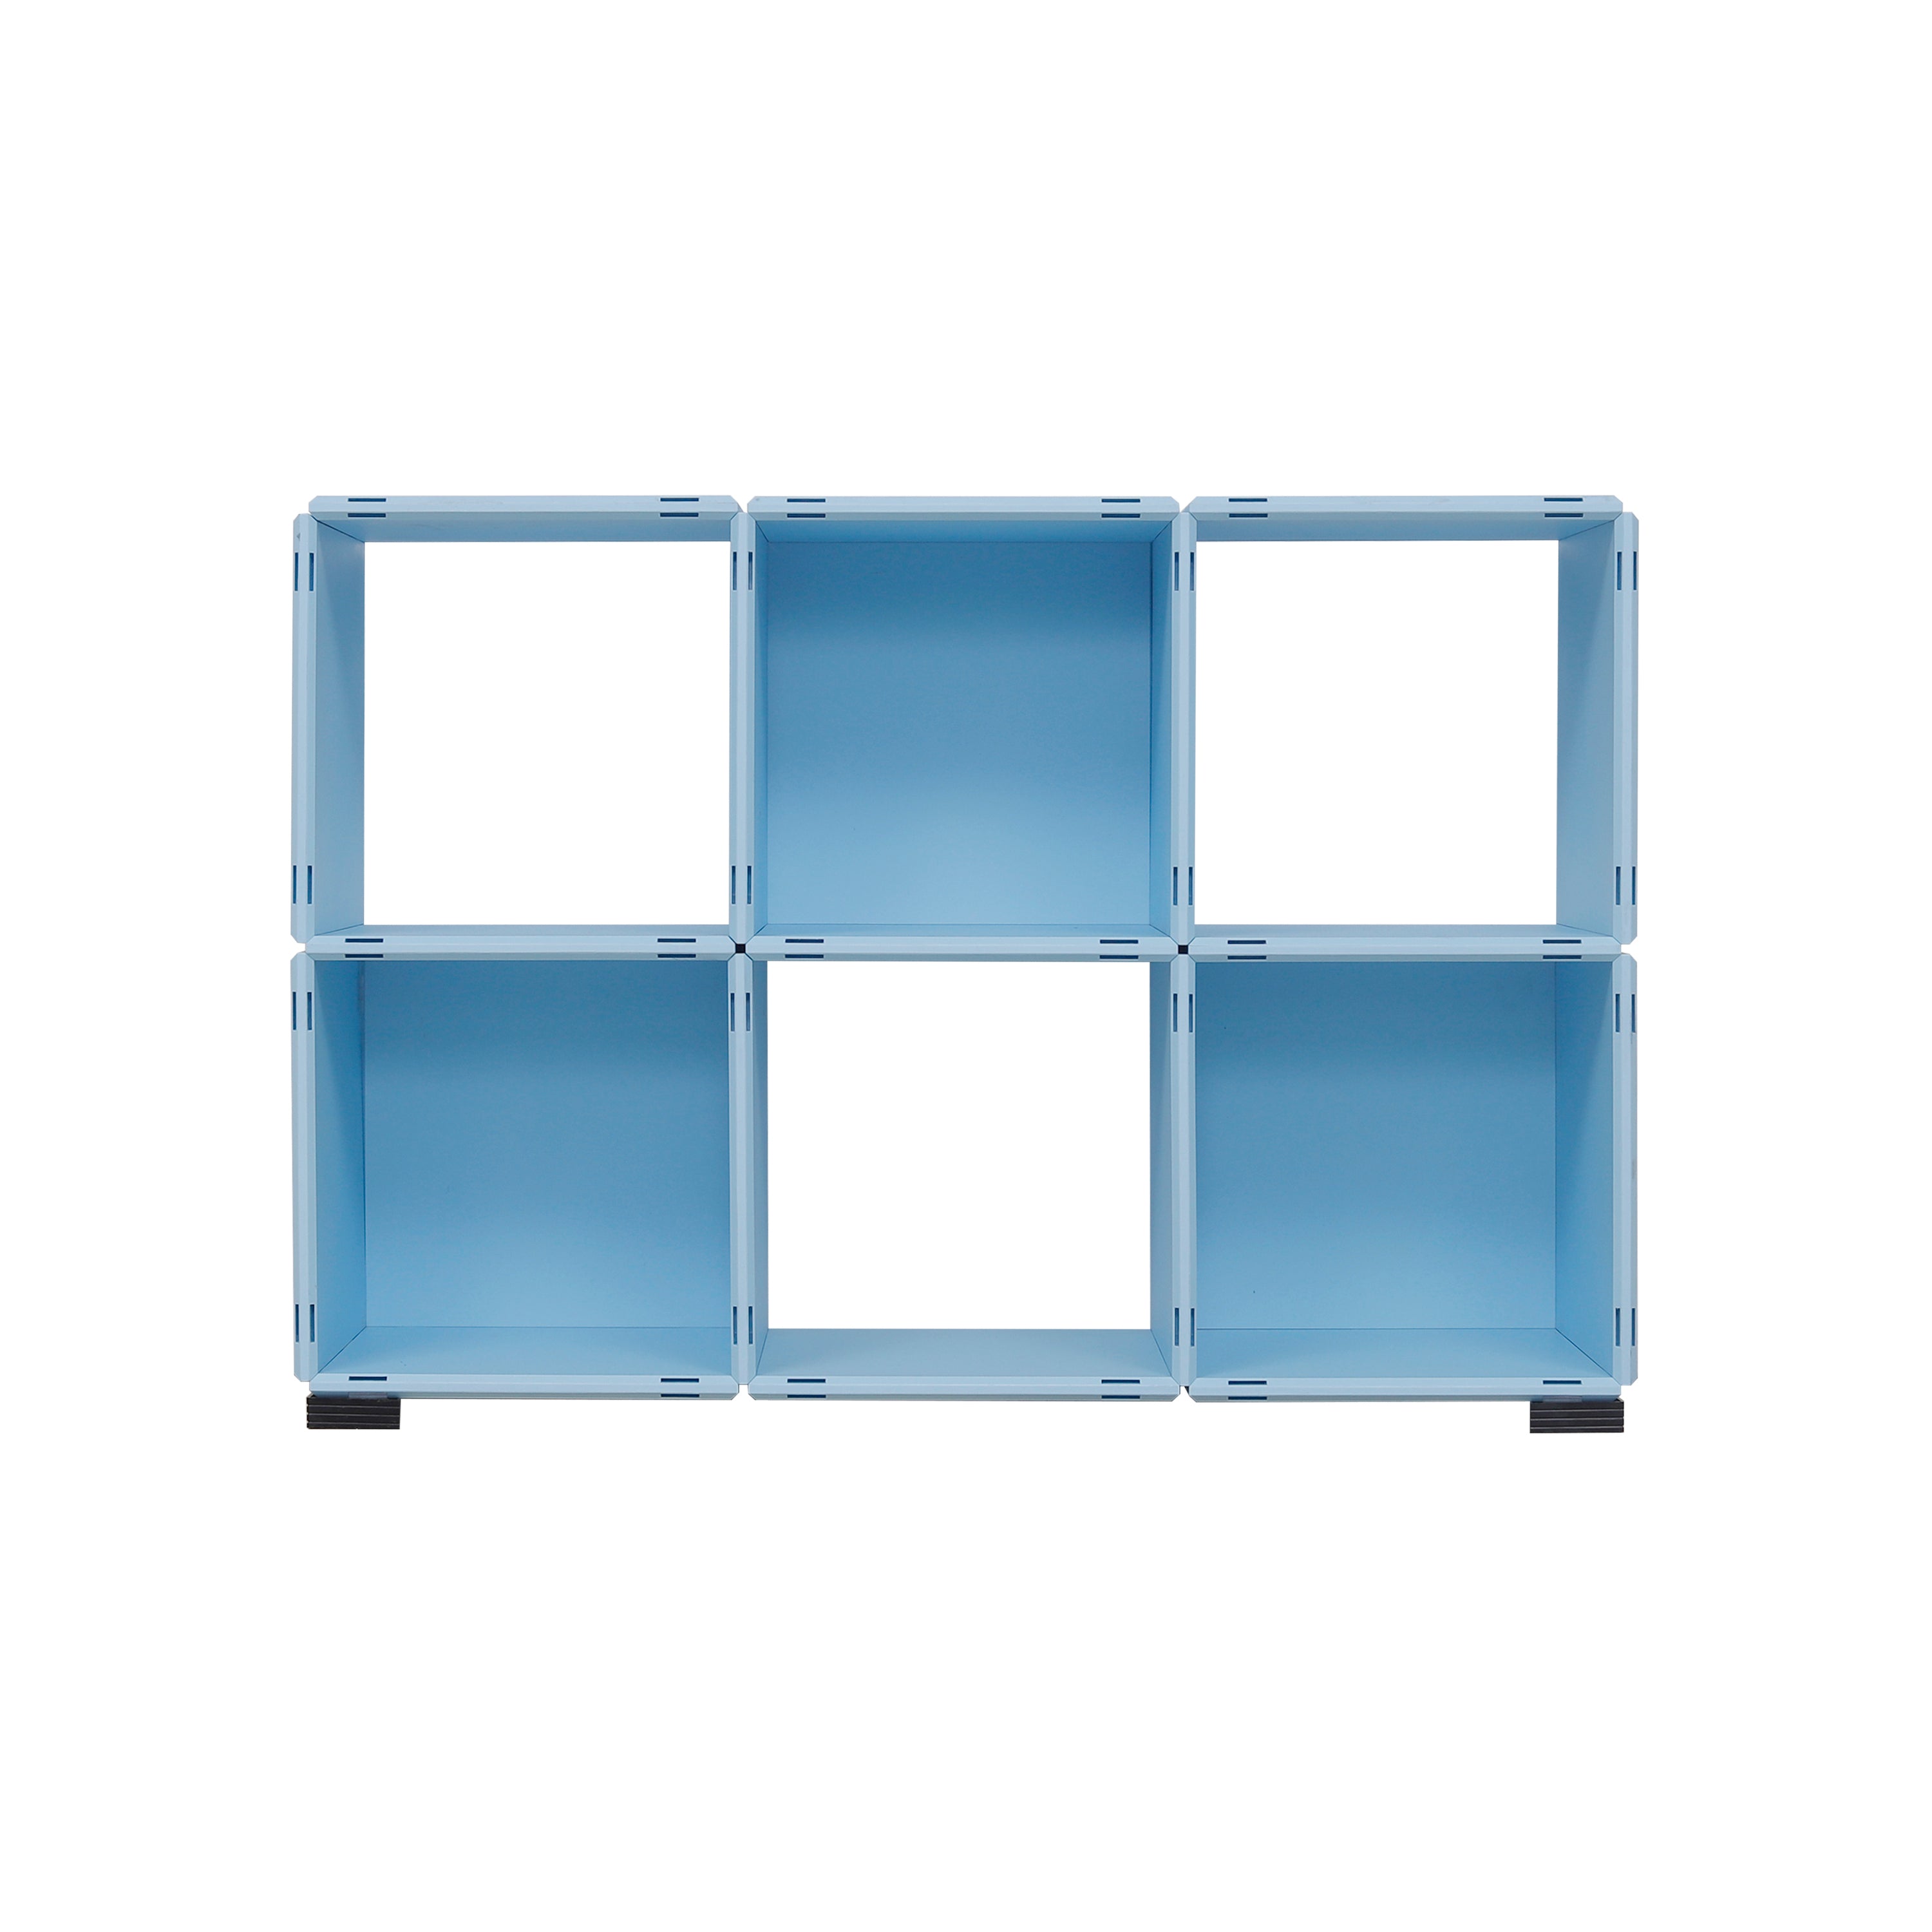 DIY Portable Storage Organizer Decorate storage cabinet